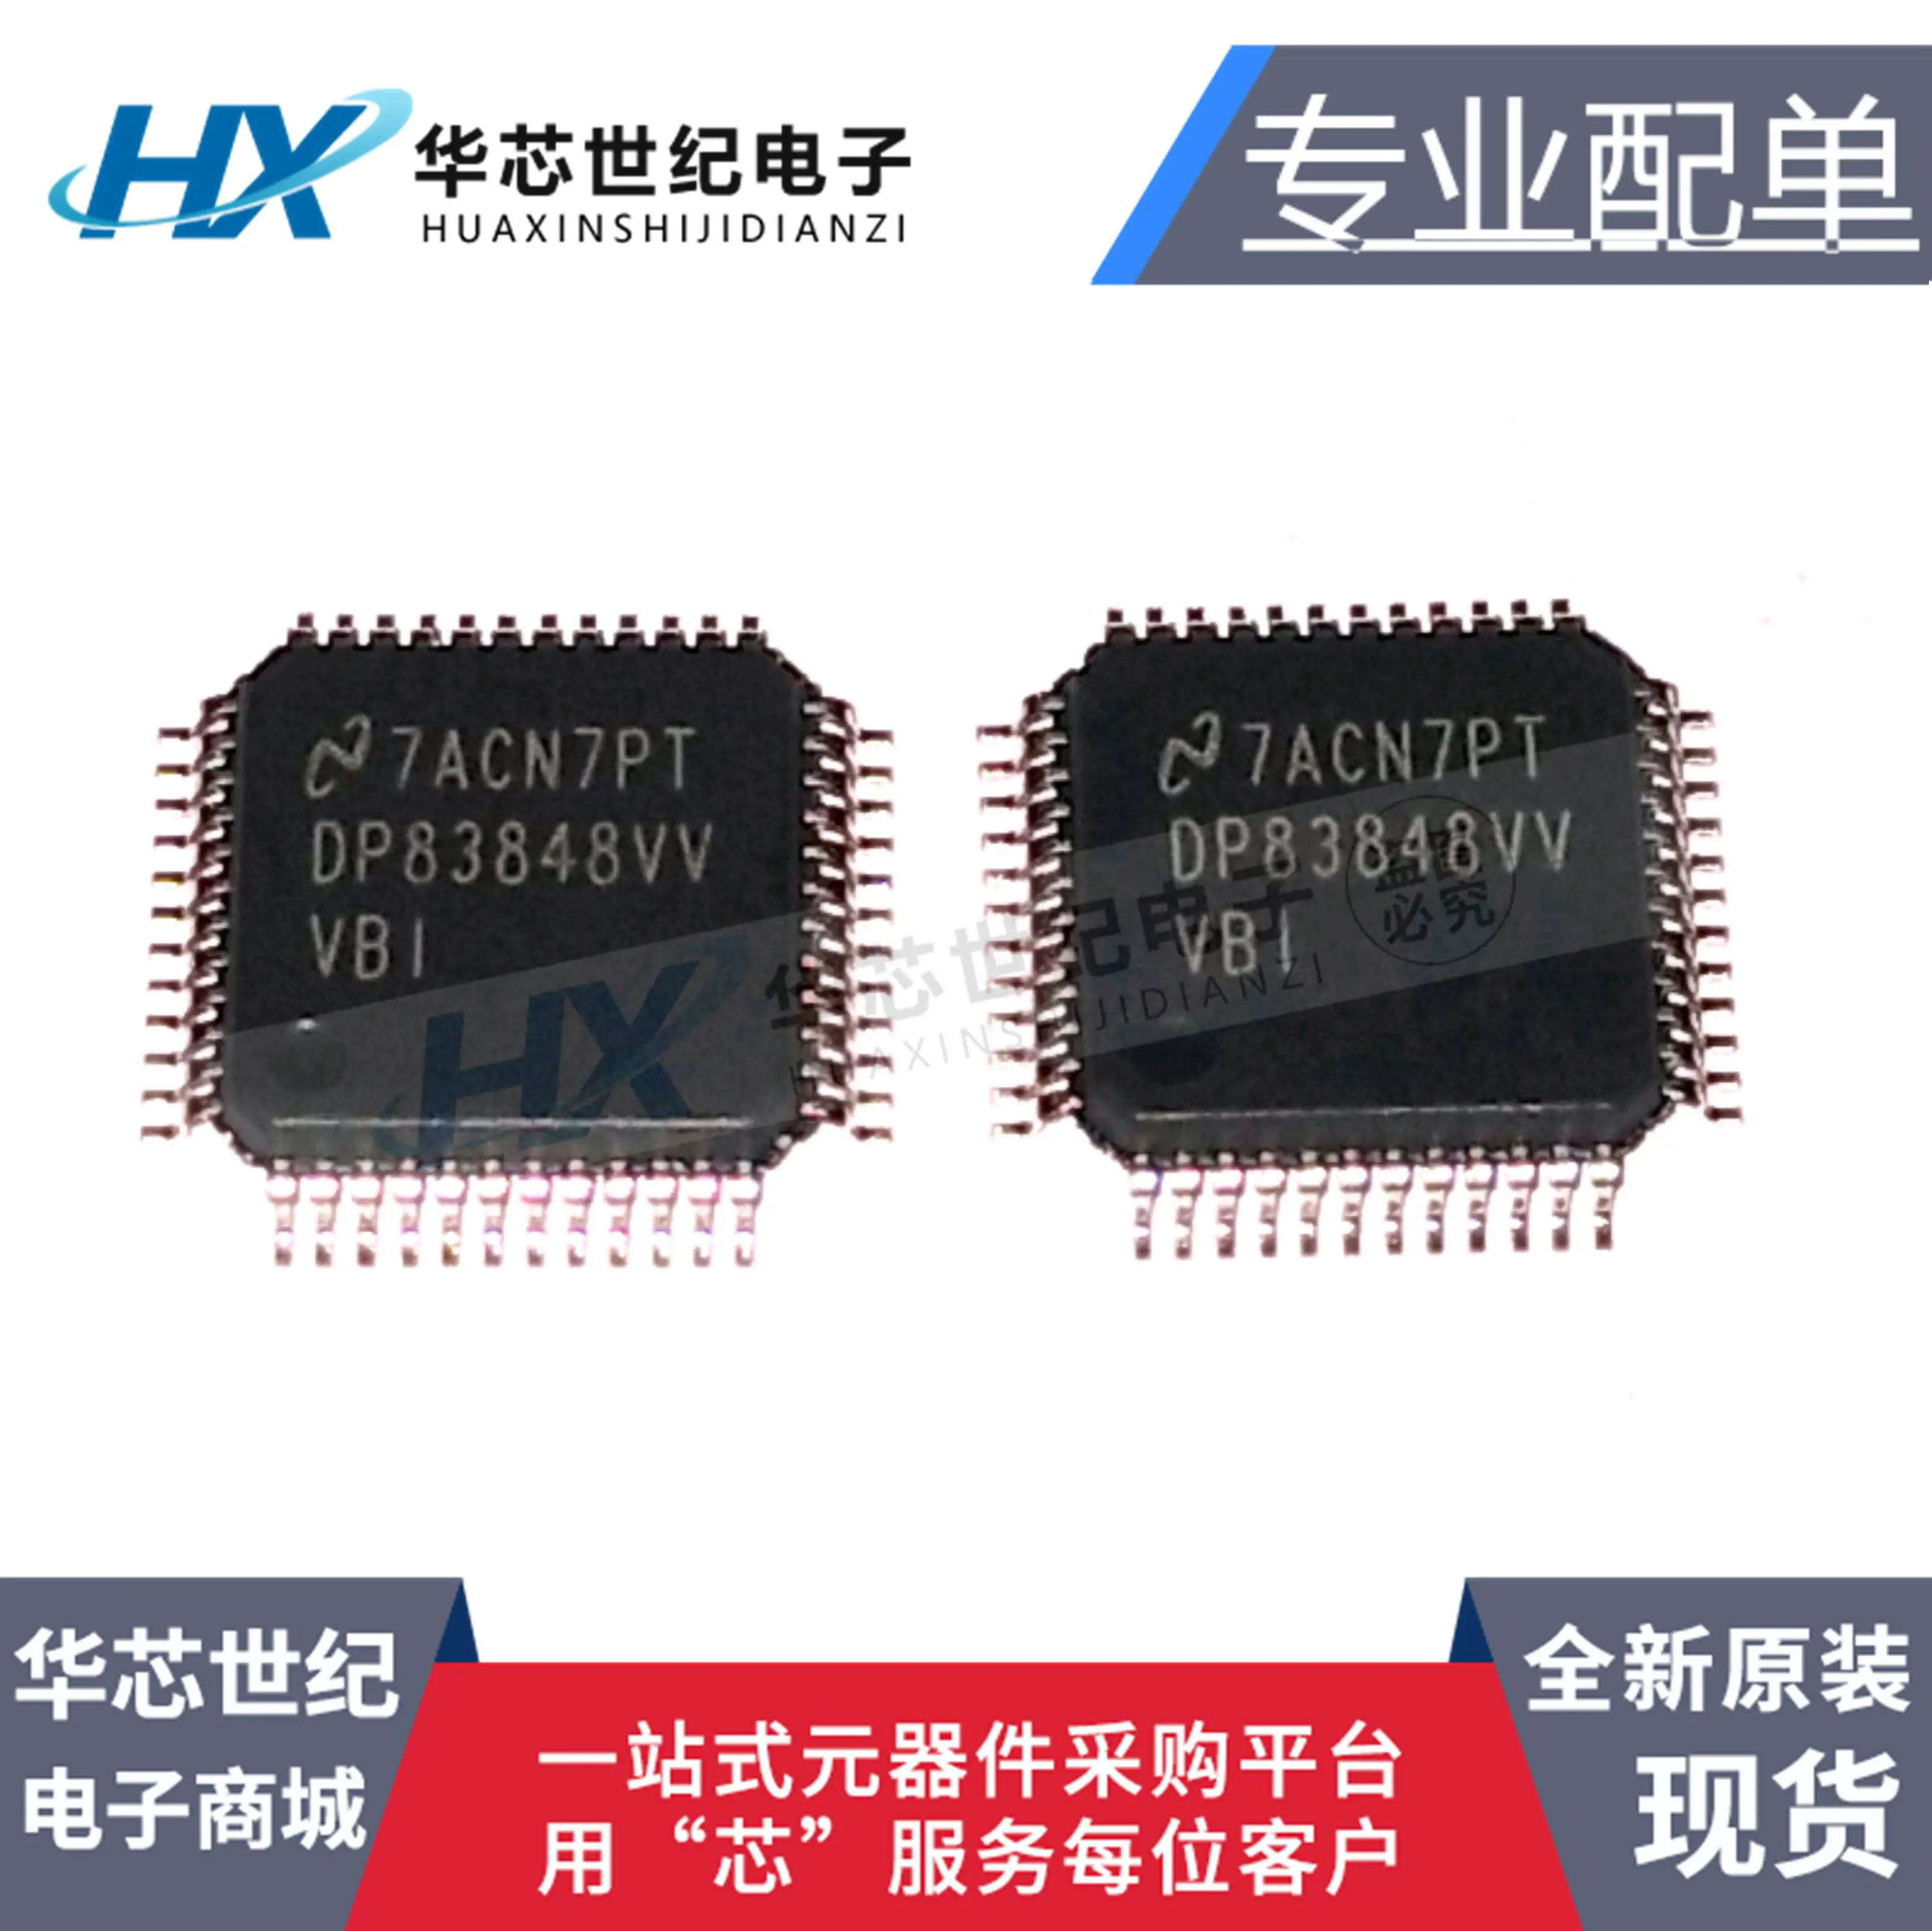 

2pcs original new DP83848IVVX DP83848VV DP83848IVV Ethernet transceiver chip IC